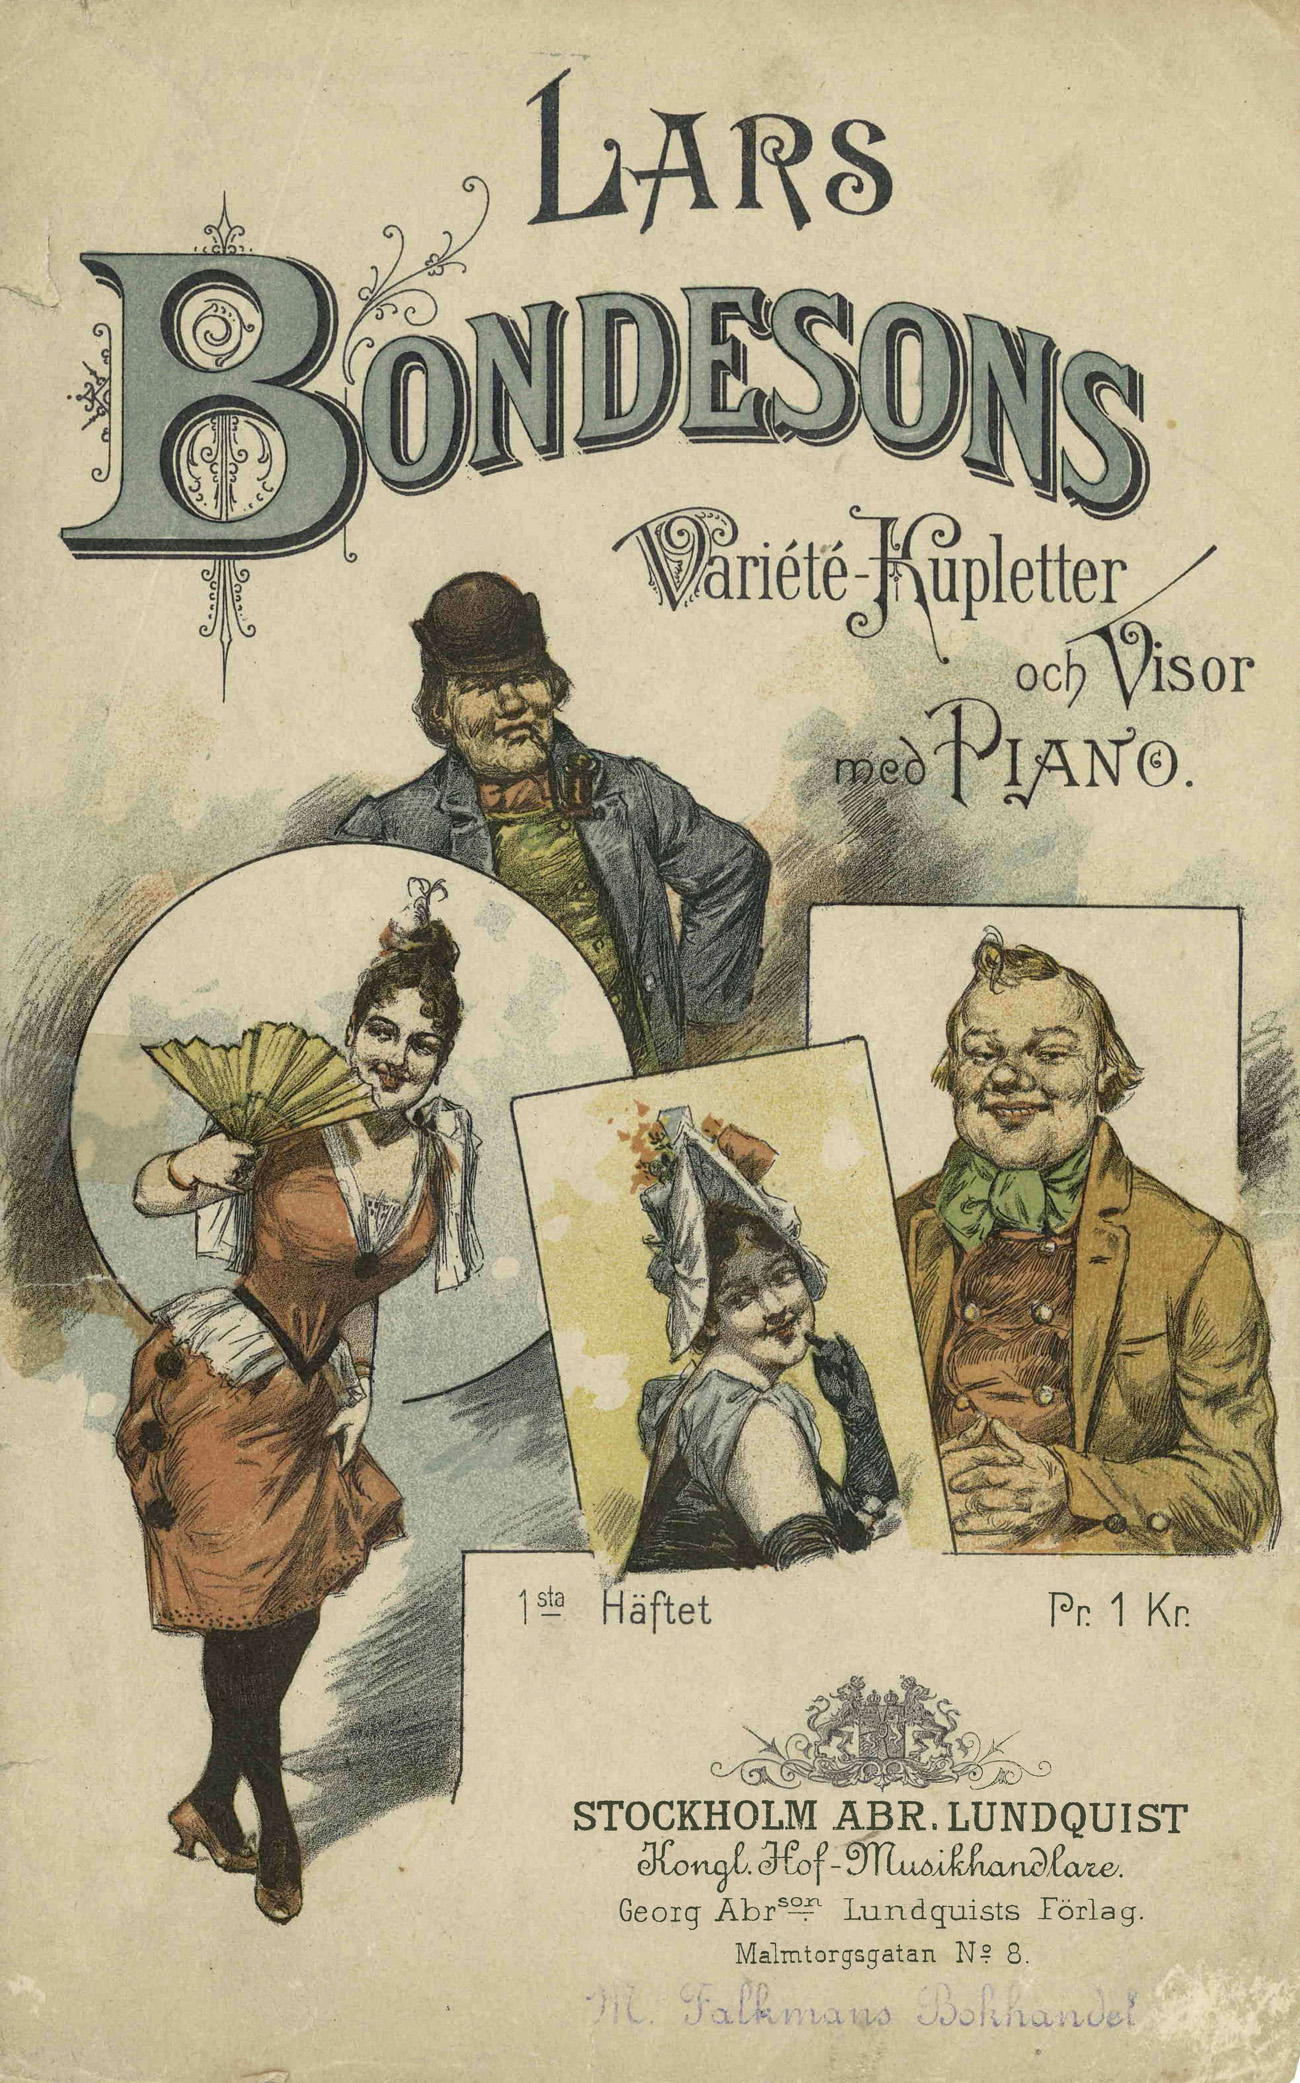 Tecknad omslagsbild med två kvinnor och två män i ålderdomliga kläder. Sånghäfte från 1891 med Lars Bondessons visor och kupletter